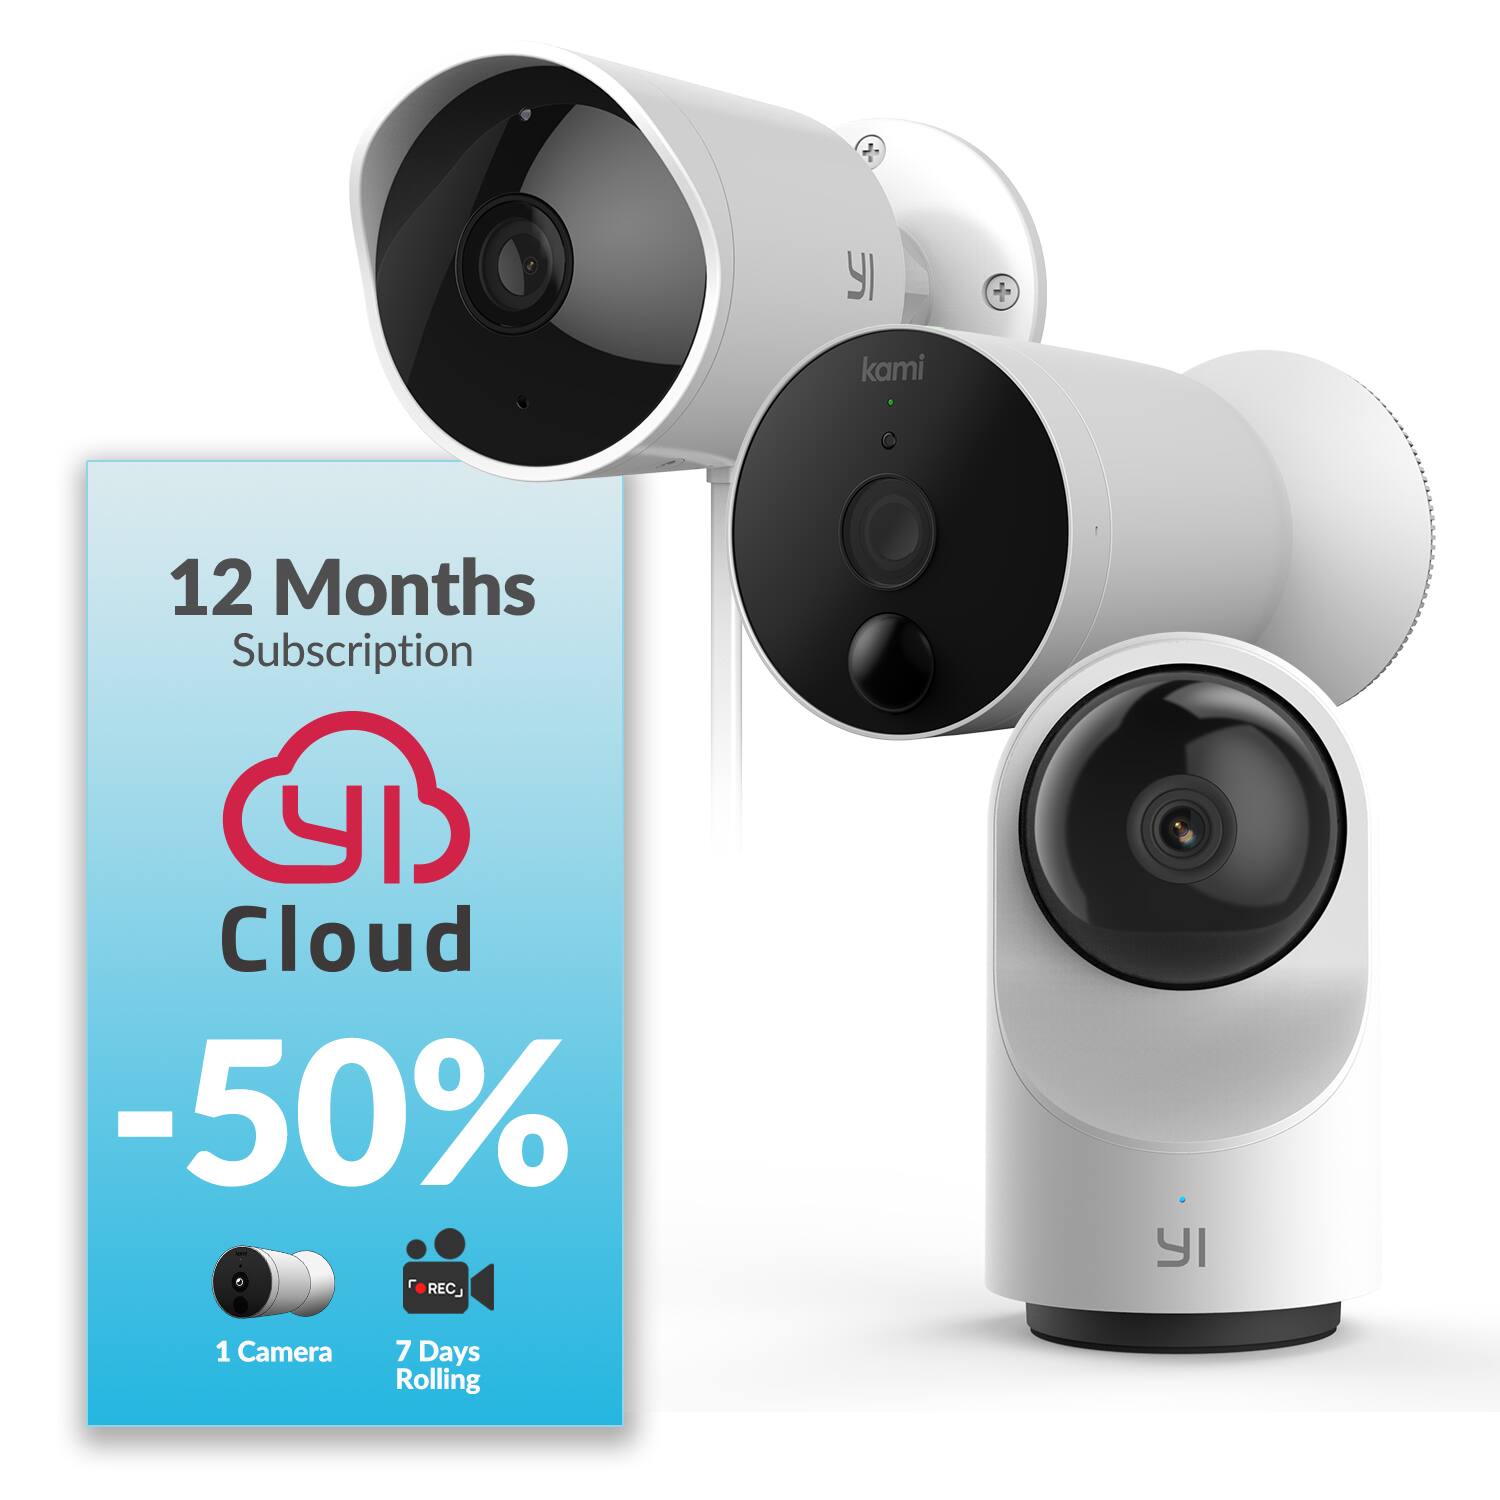 YI Camera: 50% off coupon, up to $75 